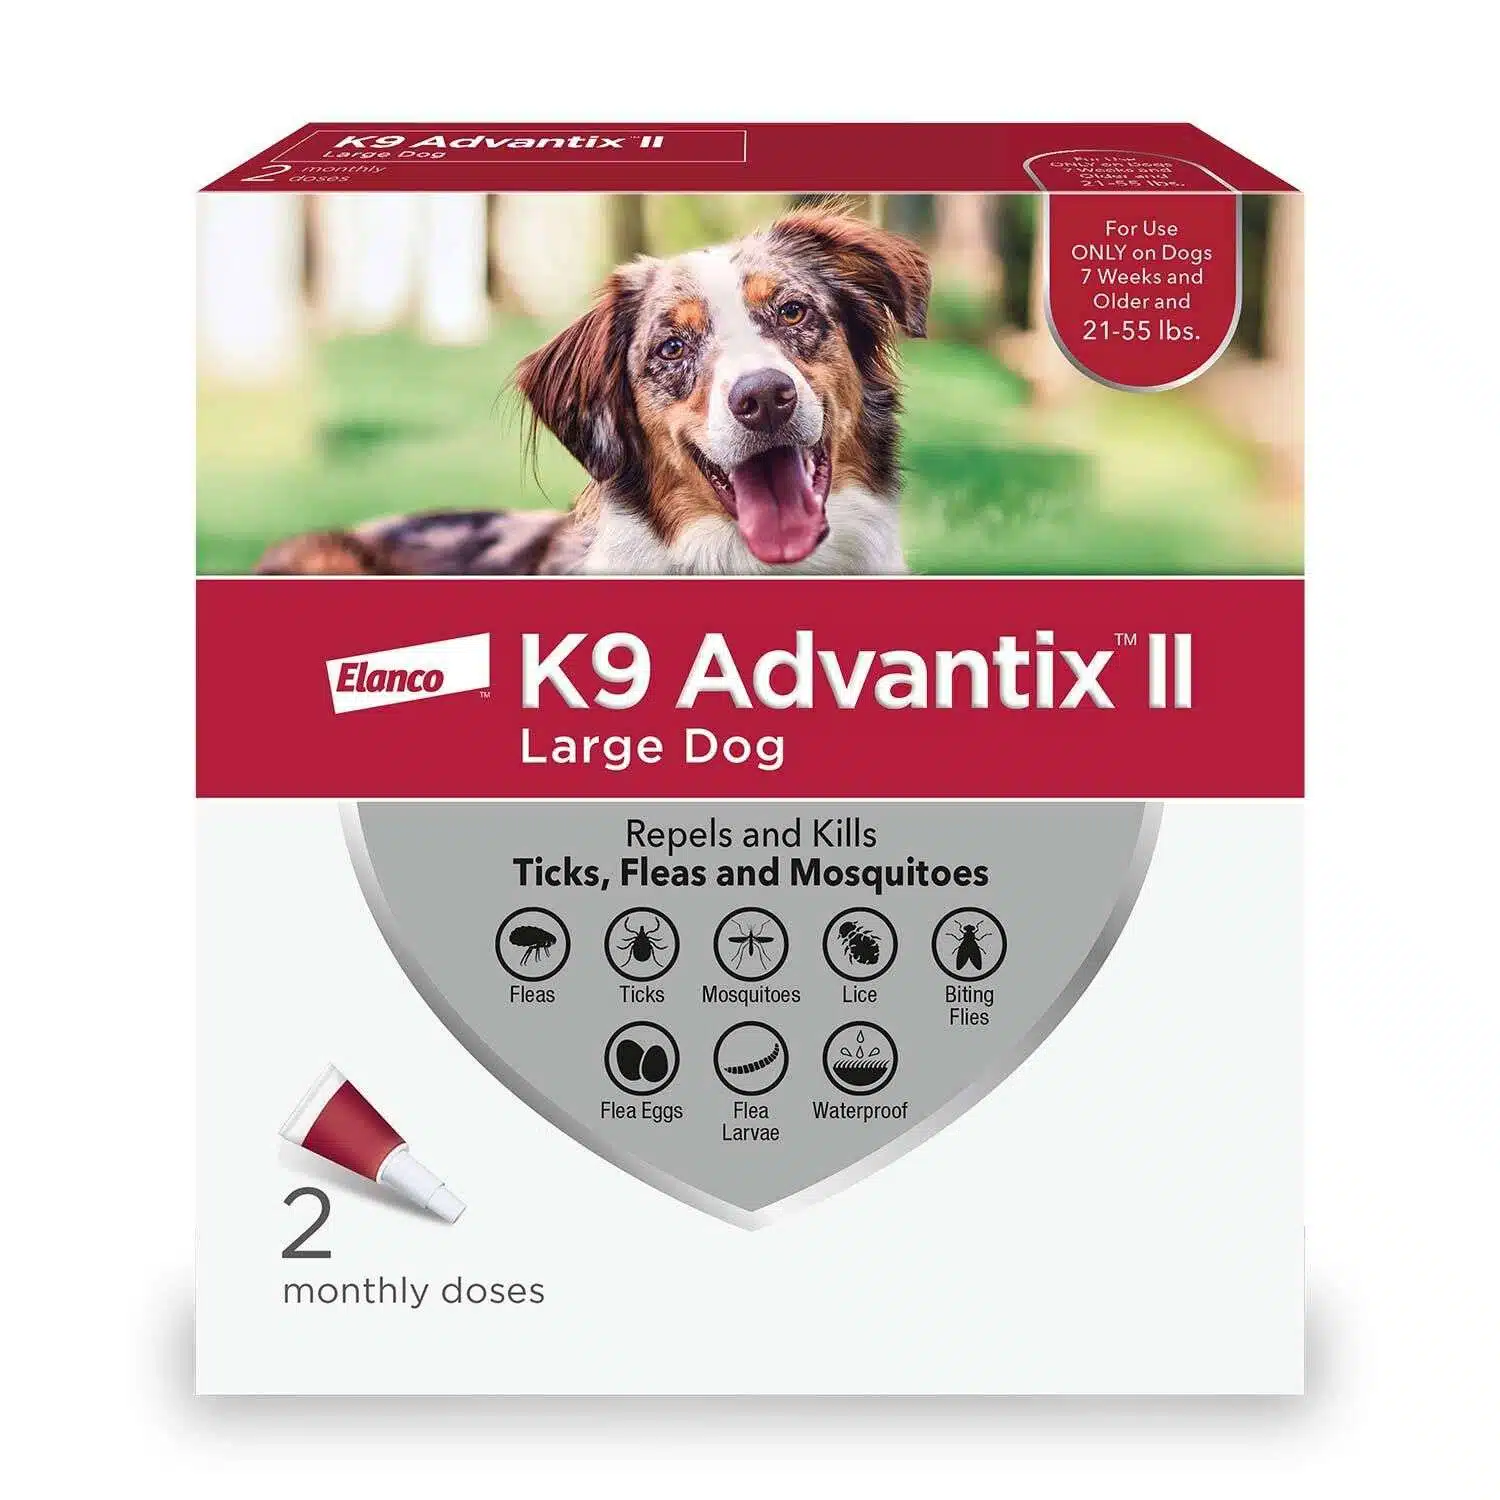 K9 Advantix Ii K9 Advantix Ii Flea & Tick Treatment For Dogs, 21 55 Lbs | 6 pk